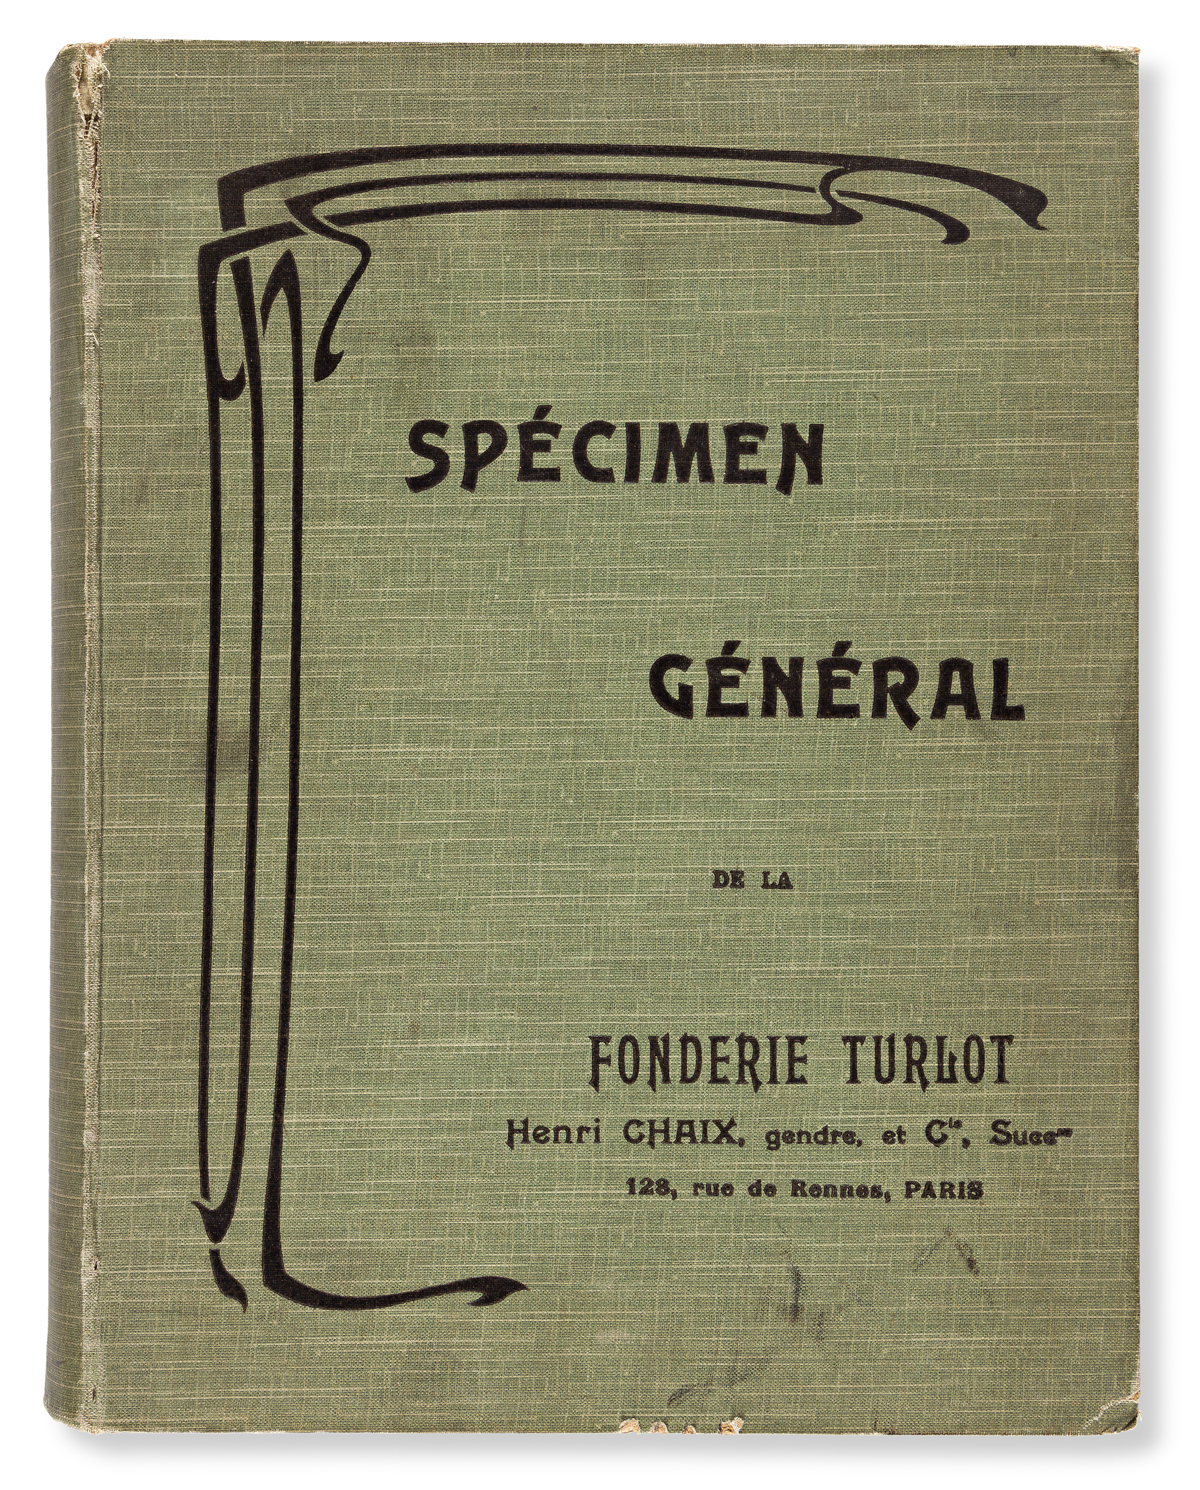 [SPECIMEN BOOK — FONDERIE TURLOT]. Spécimen Général. Paris: Henri Chaix, gendre, et Cie., [n.d. c.1900].